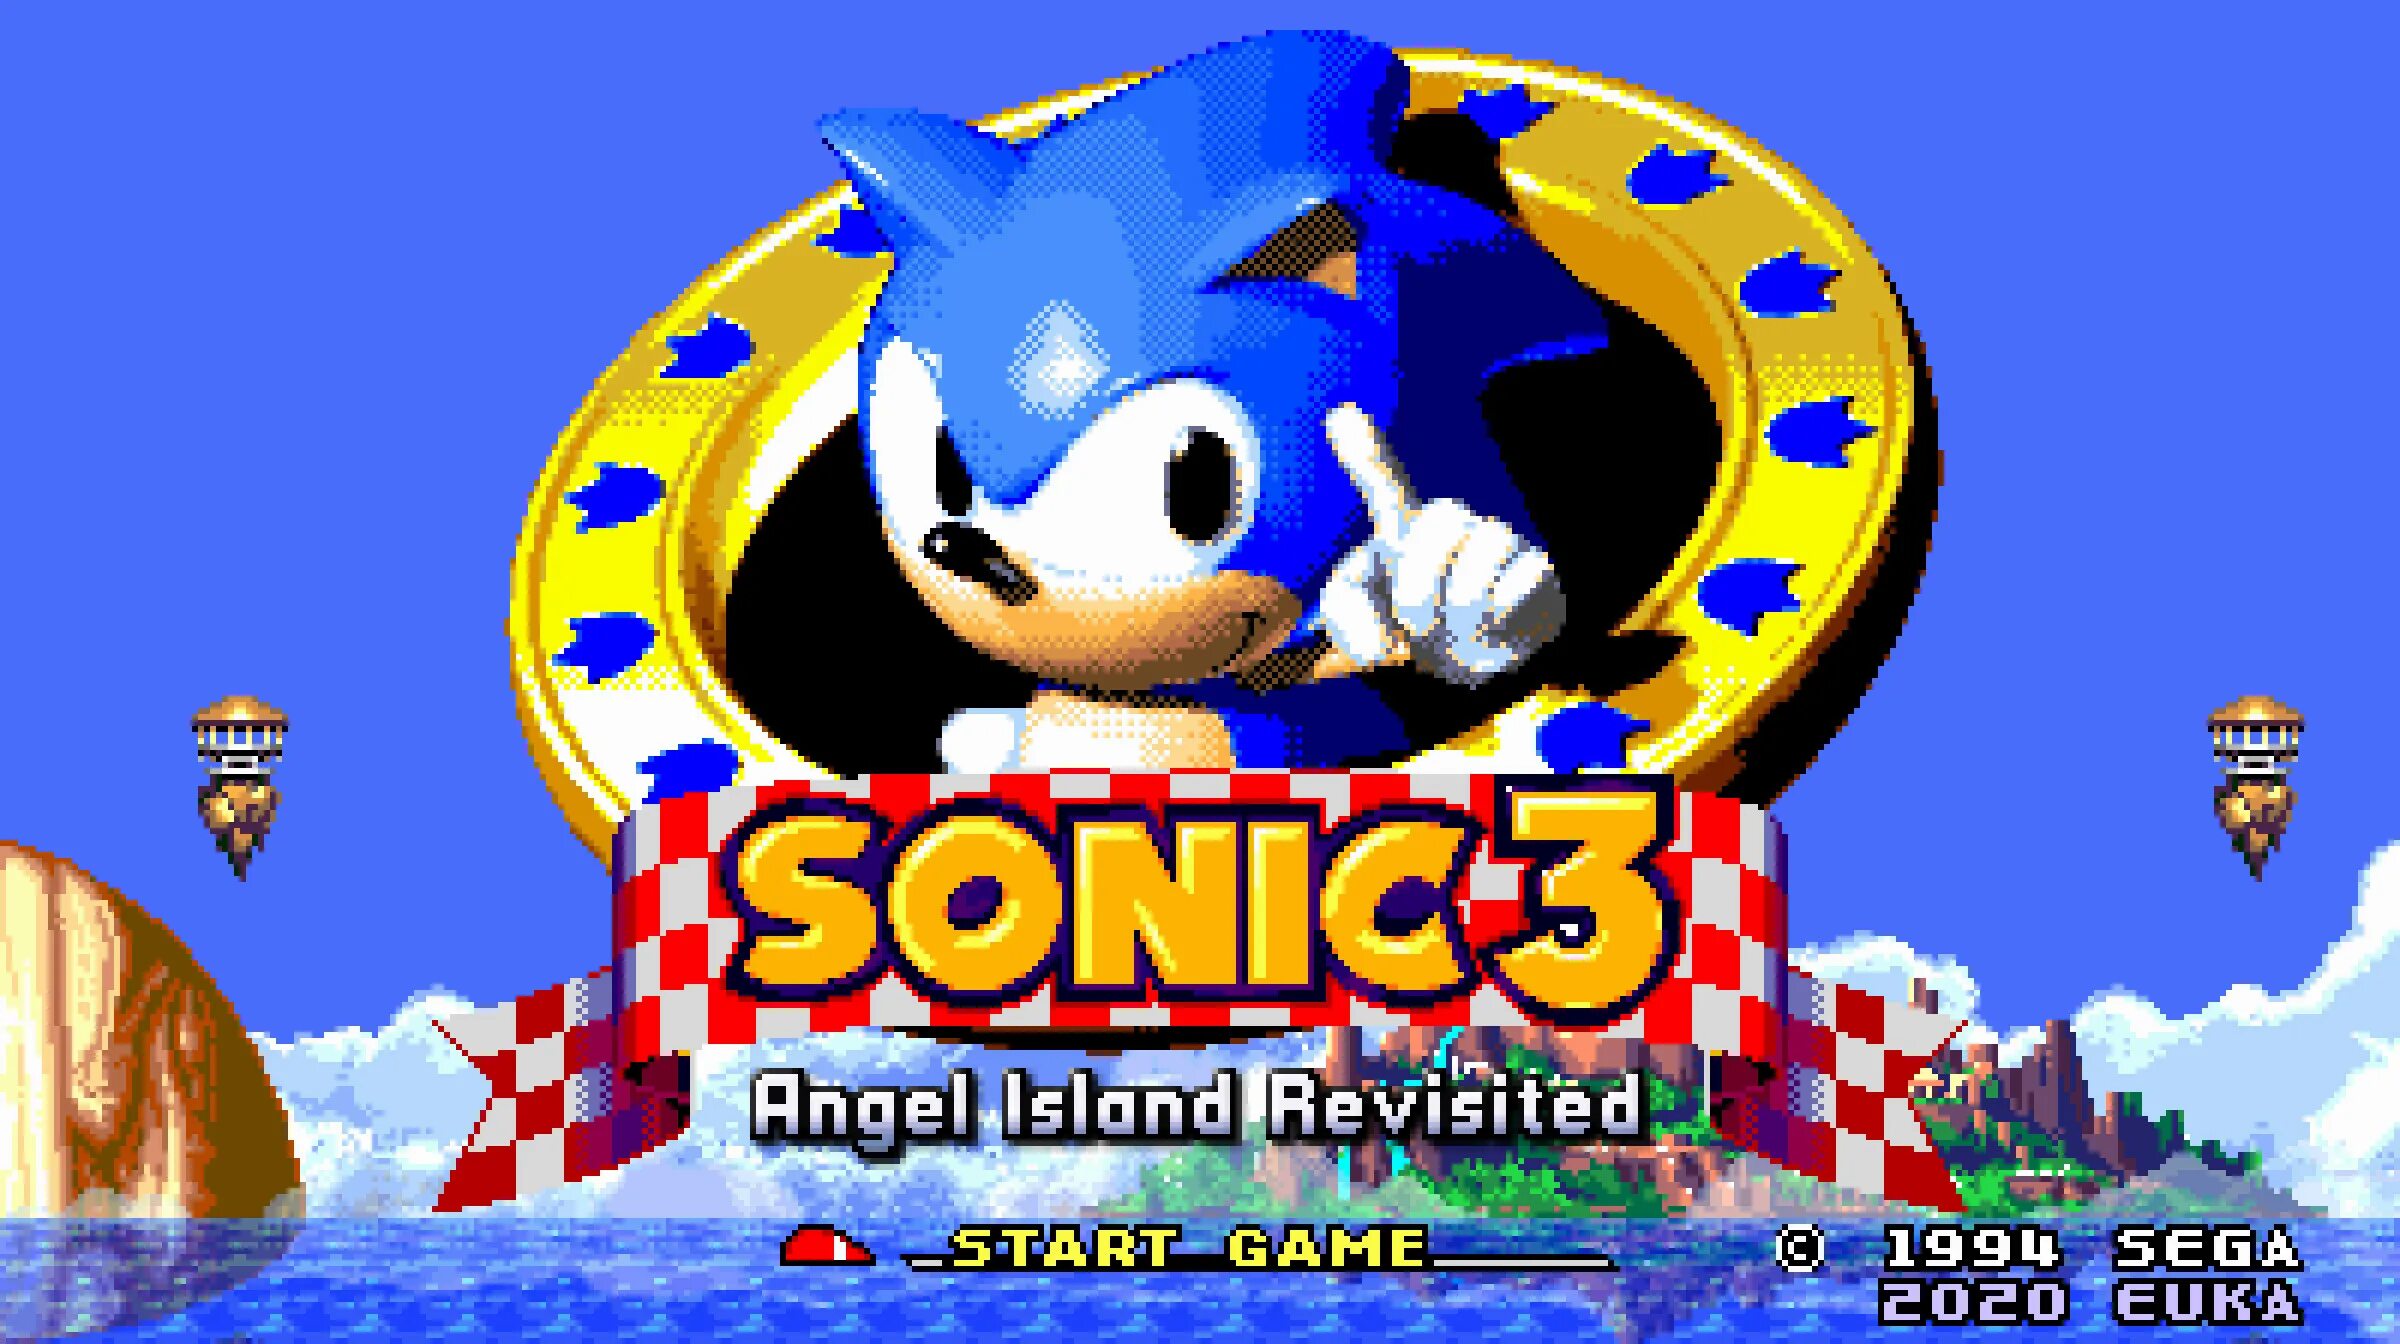 ROM Соник 3 АИР. Sonic 3 a.i.r. Соник 3 остров ангелов. Энджел Айленд Соник 3. Sonic 3 mode